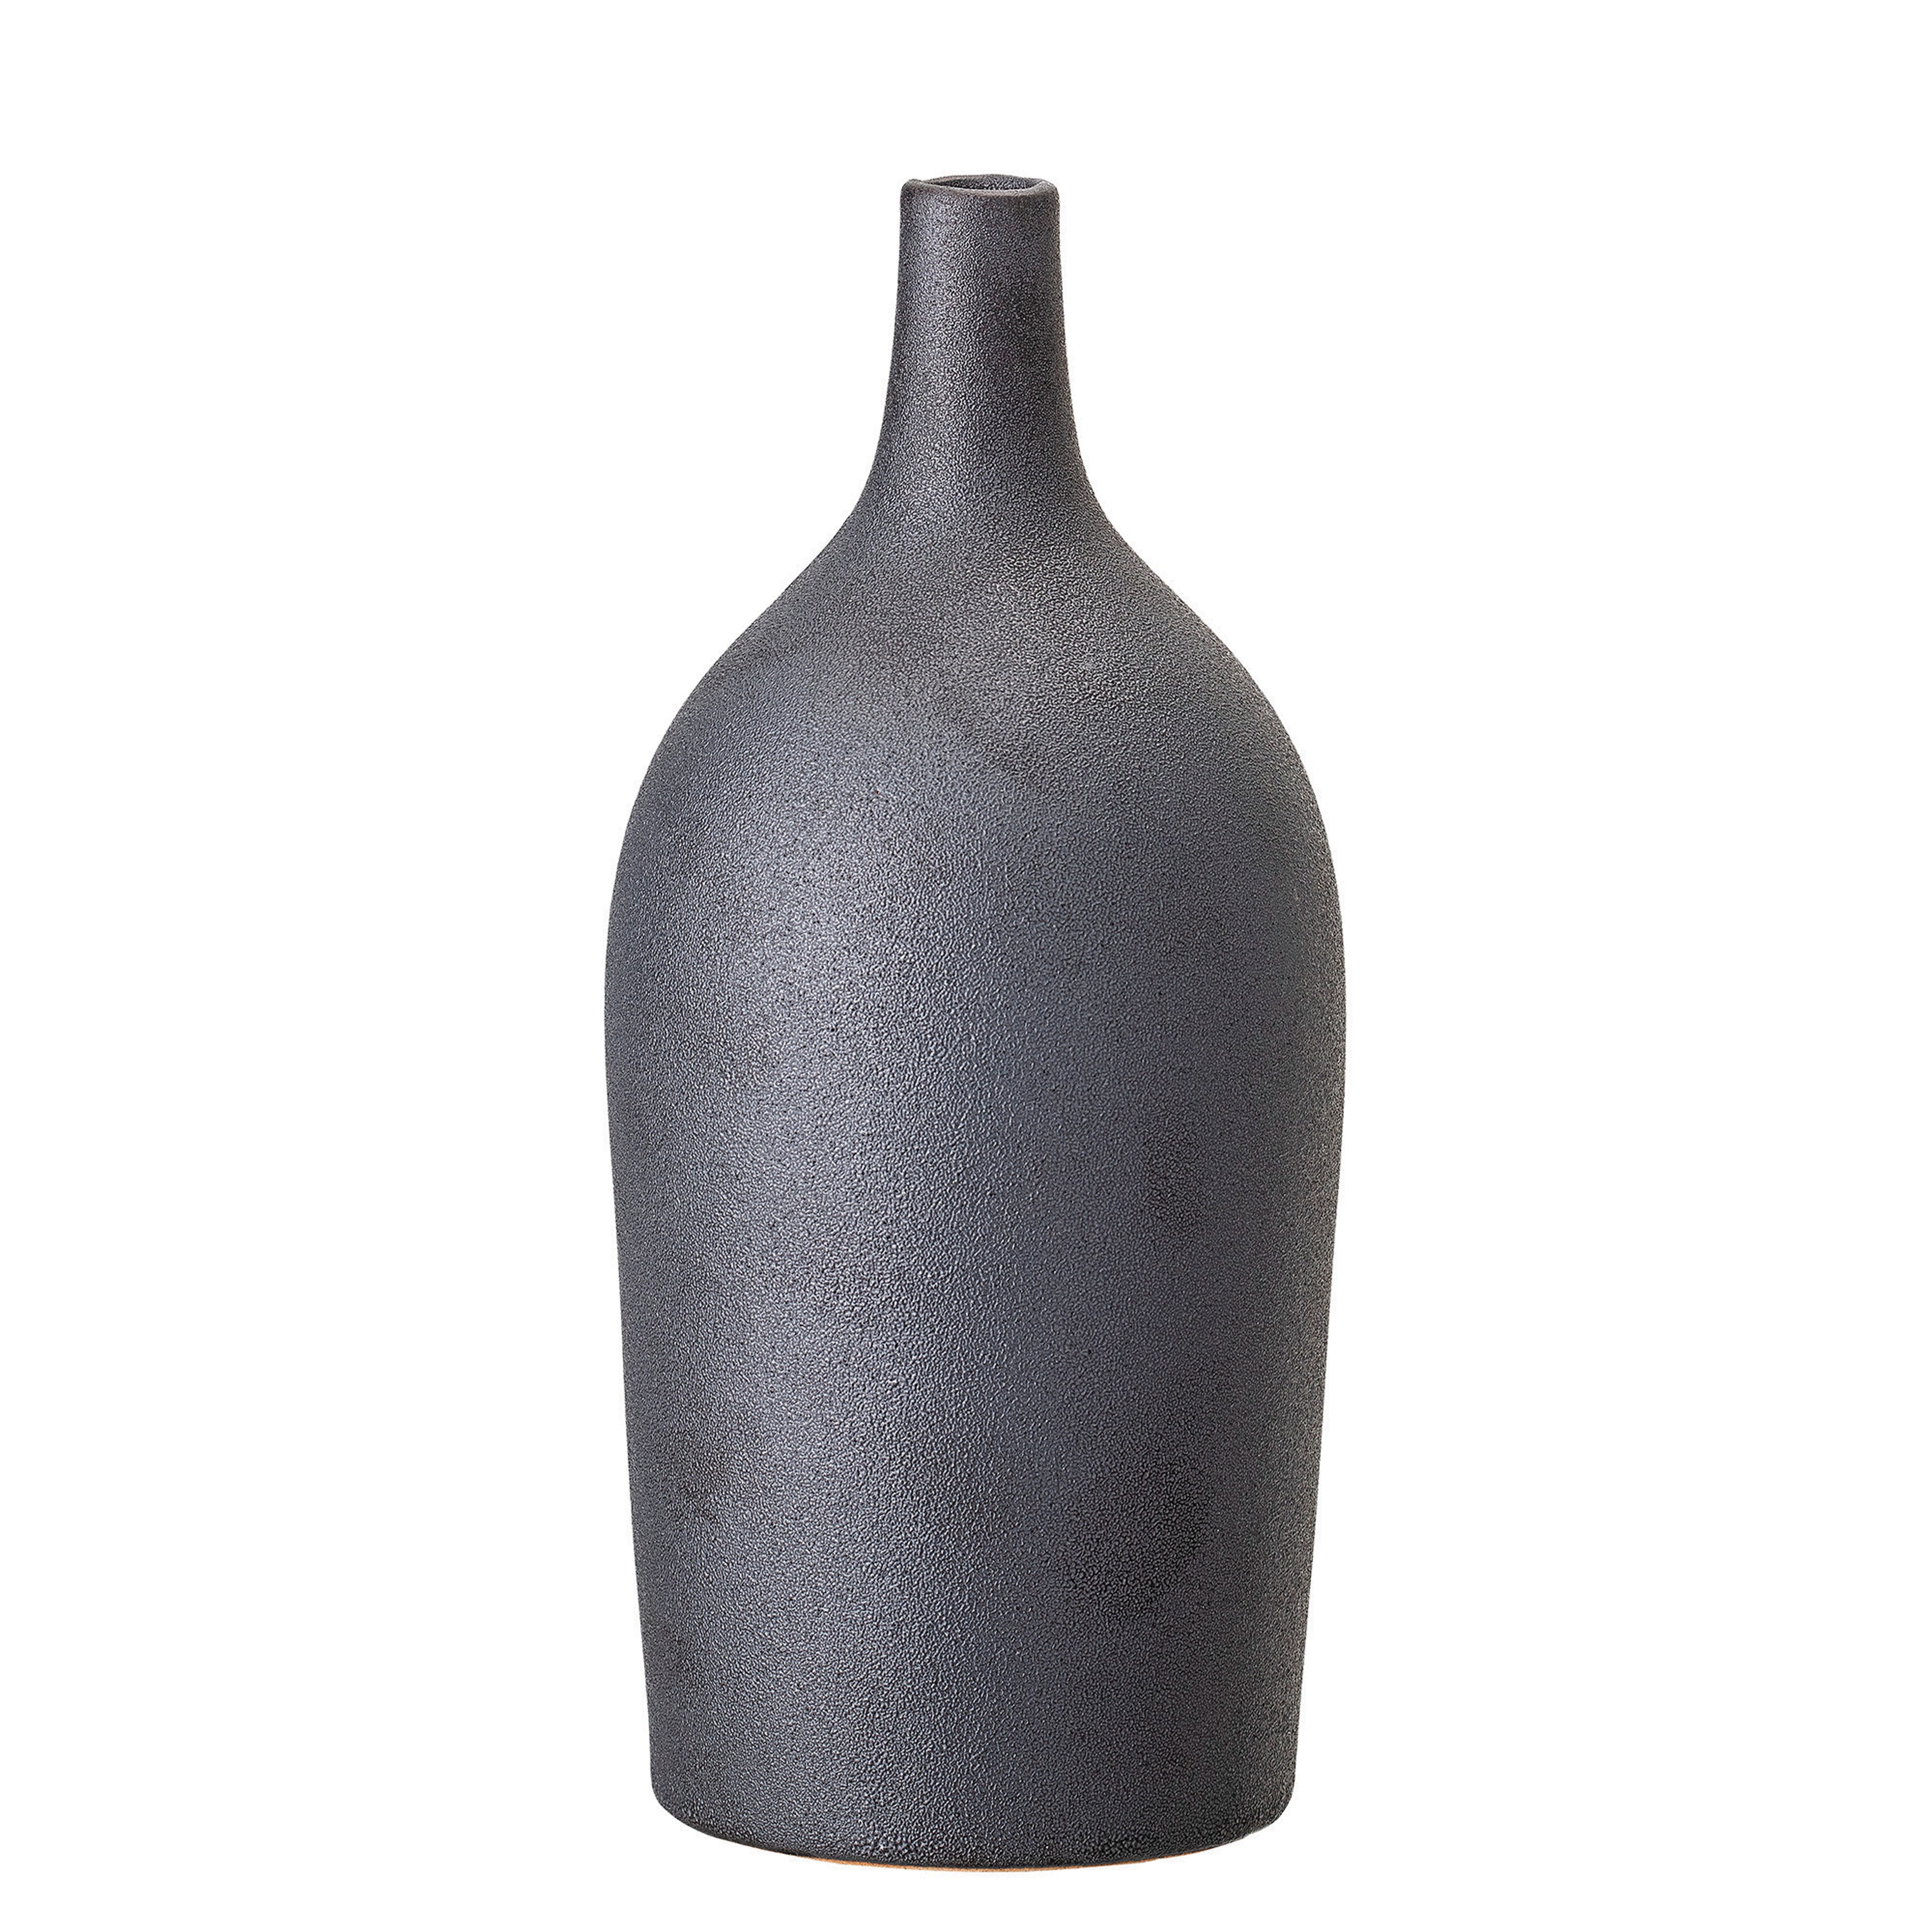 Stoneware Vase with Reactive Glaze Finish, Matte Black - Moss & Wilder